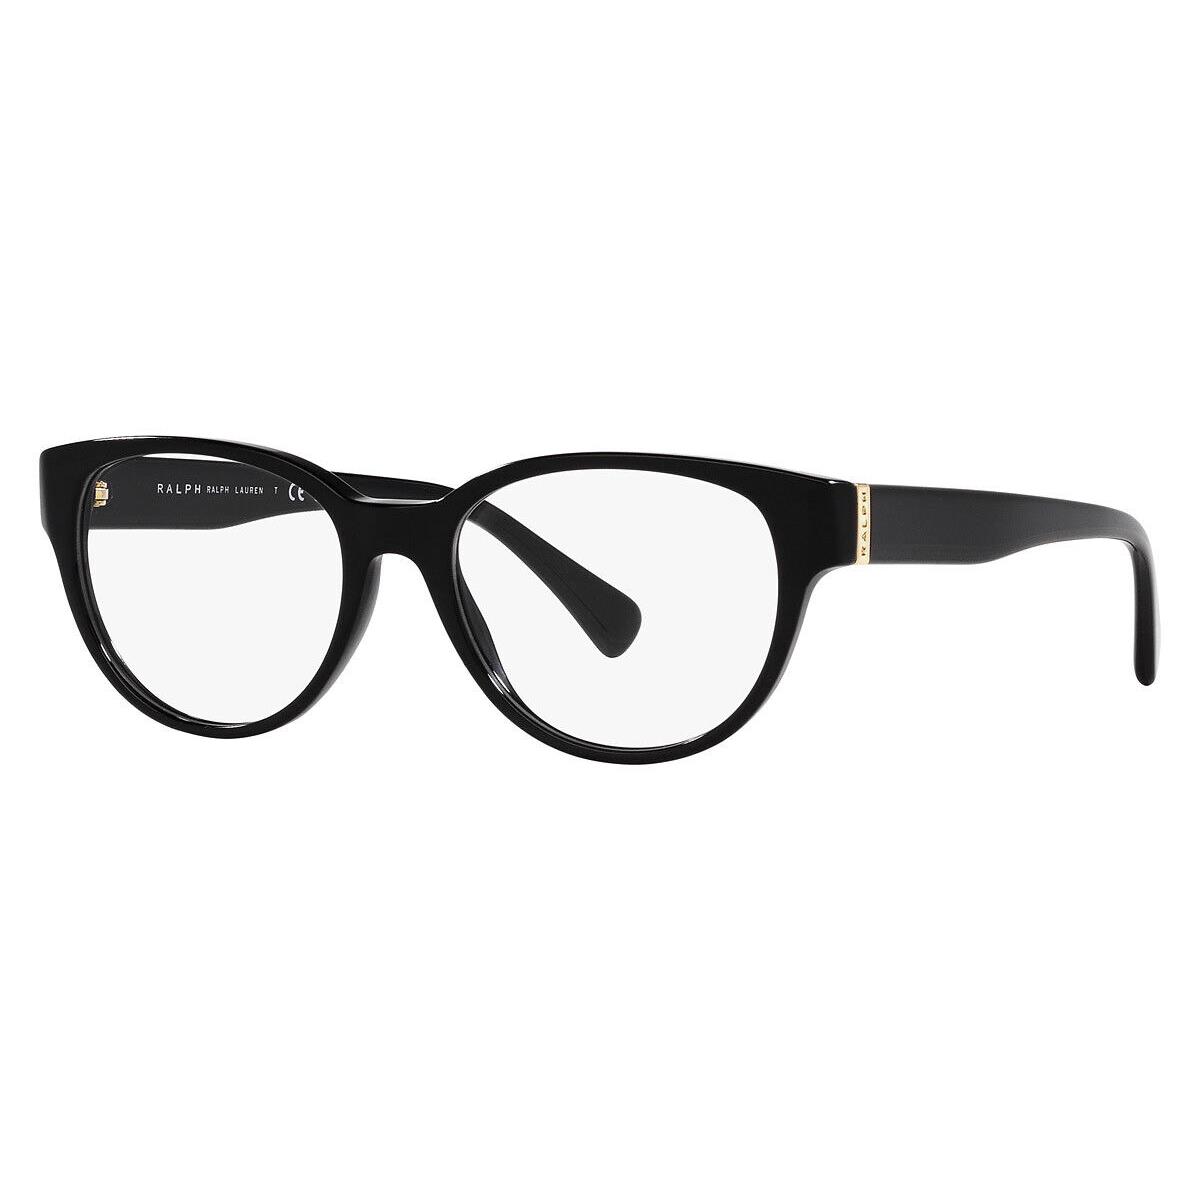 Ralph Lauren RA7151 Eyeglasses Women Shiny Black Oval 52mm